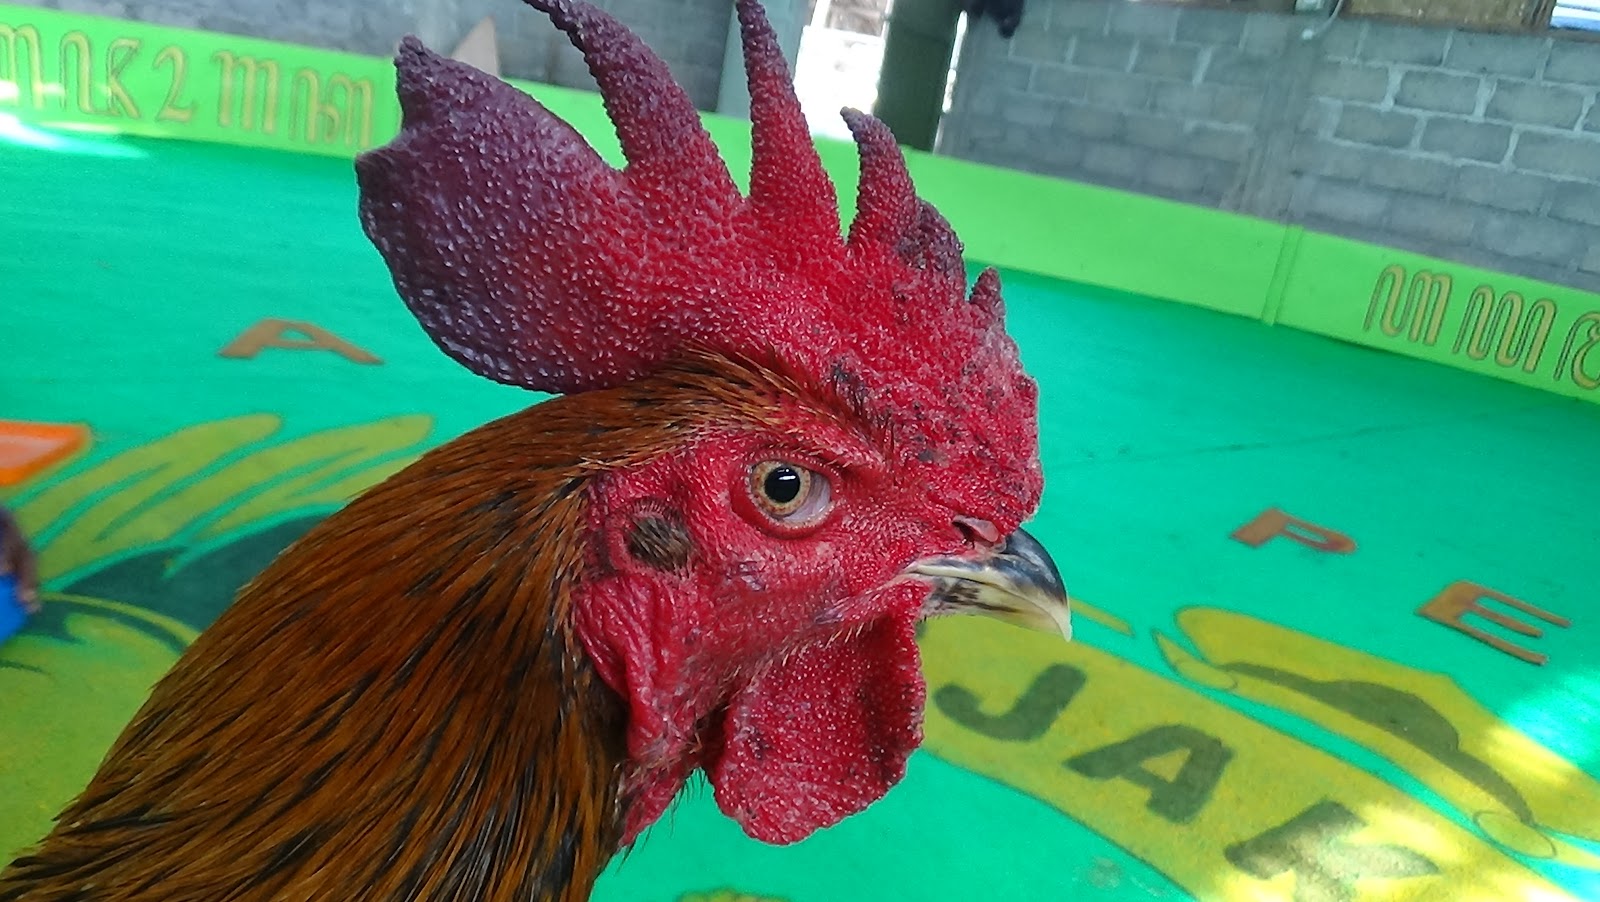 Ayam Petarung Jogjakarta: ORY SOLAH LARI ANAK MATAHARI 